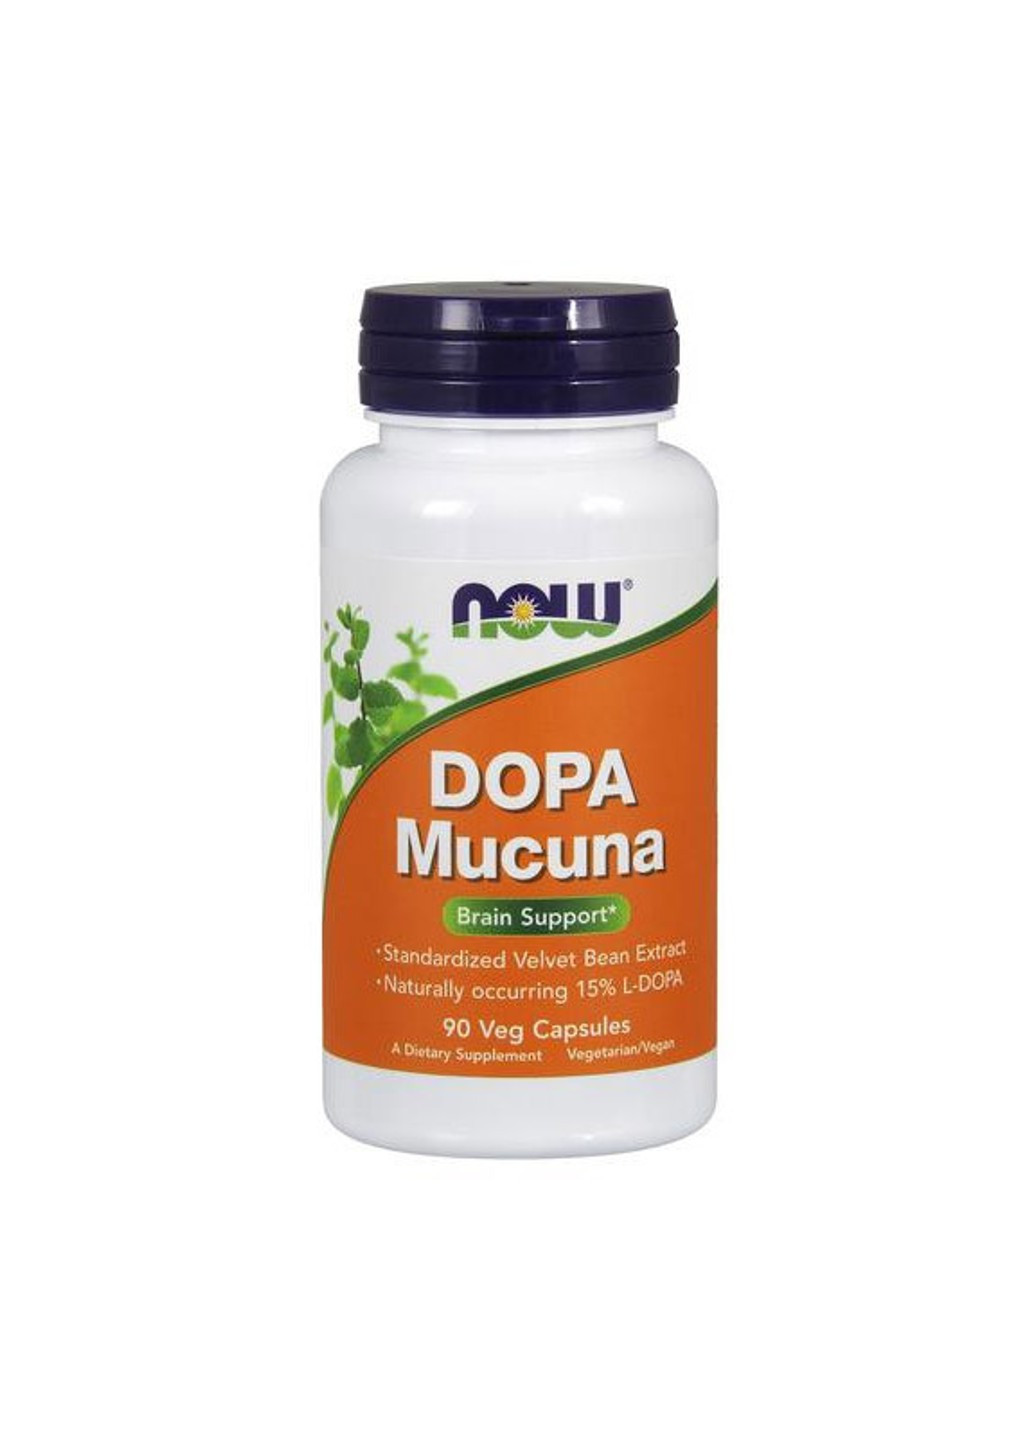 Допа Мукуна пекуча DOPA Mucuna (90 капс) нау фудс Now Foods (255408199)